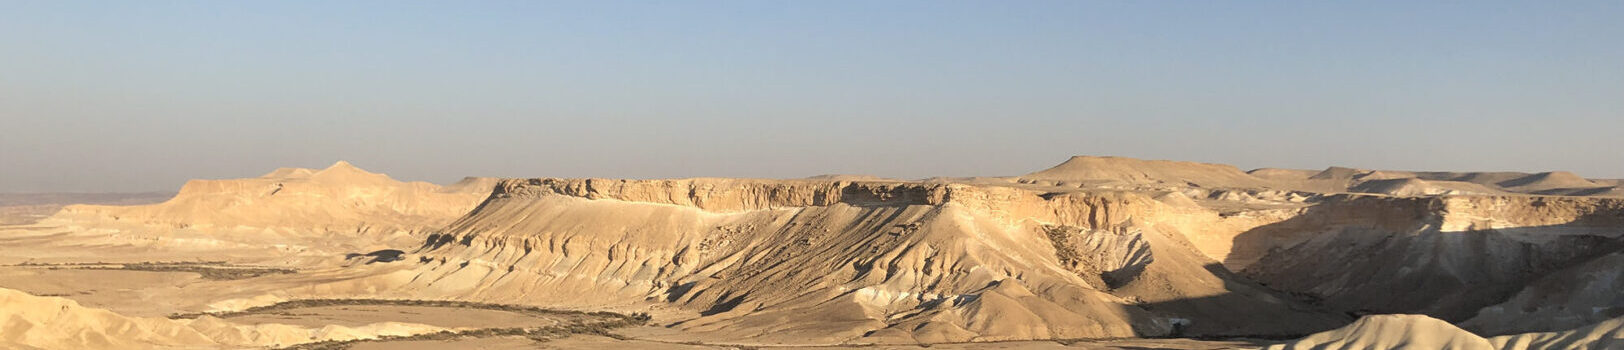 Wüste Negev, Roger Poltéra